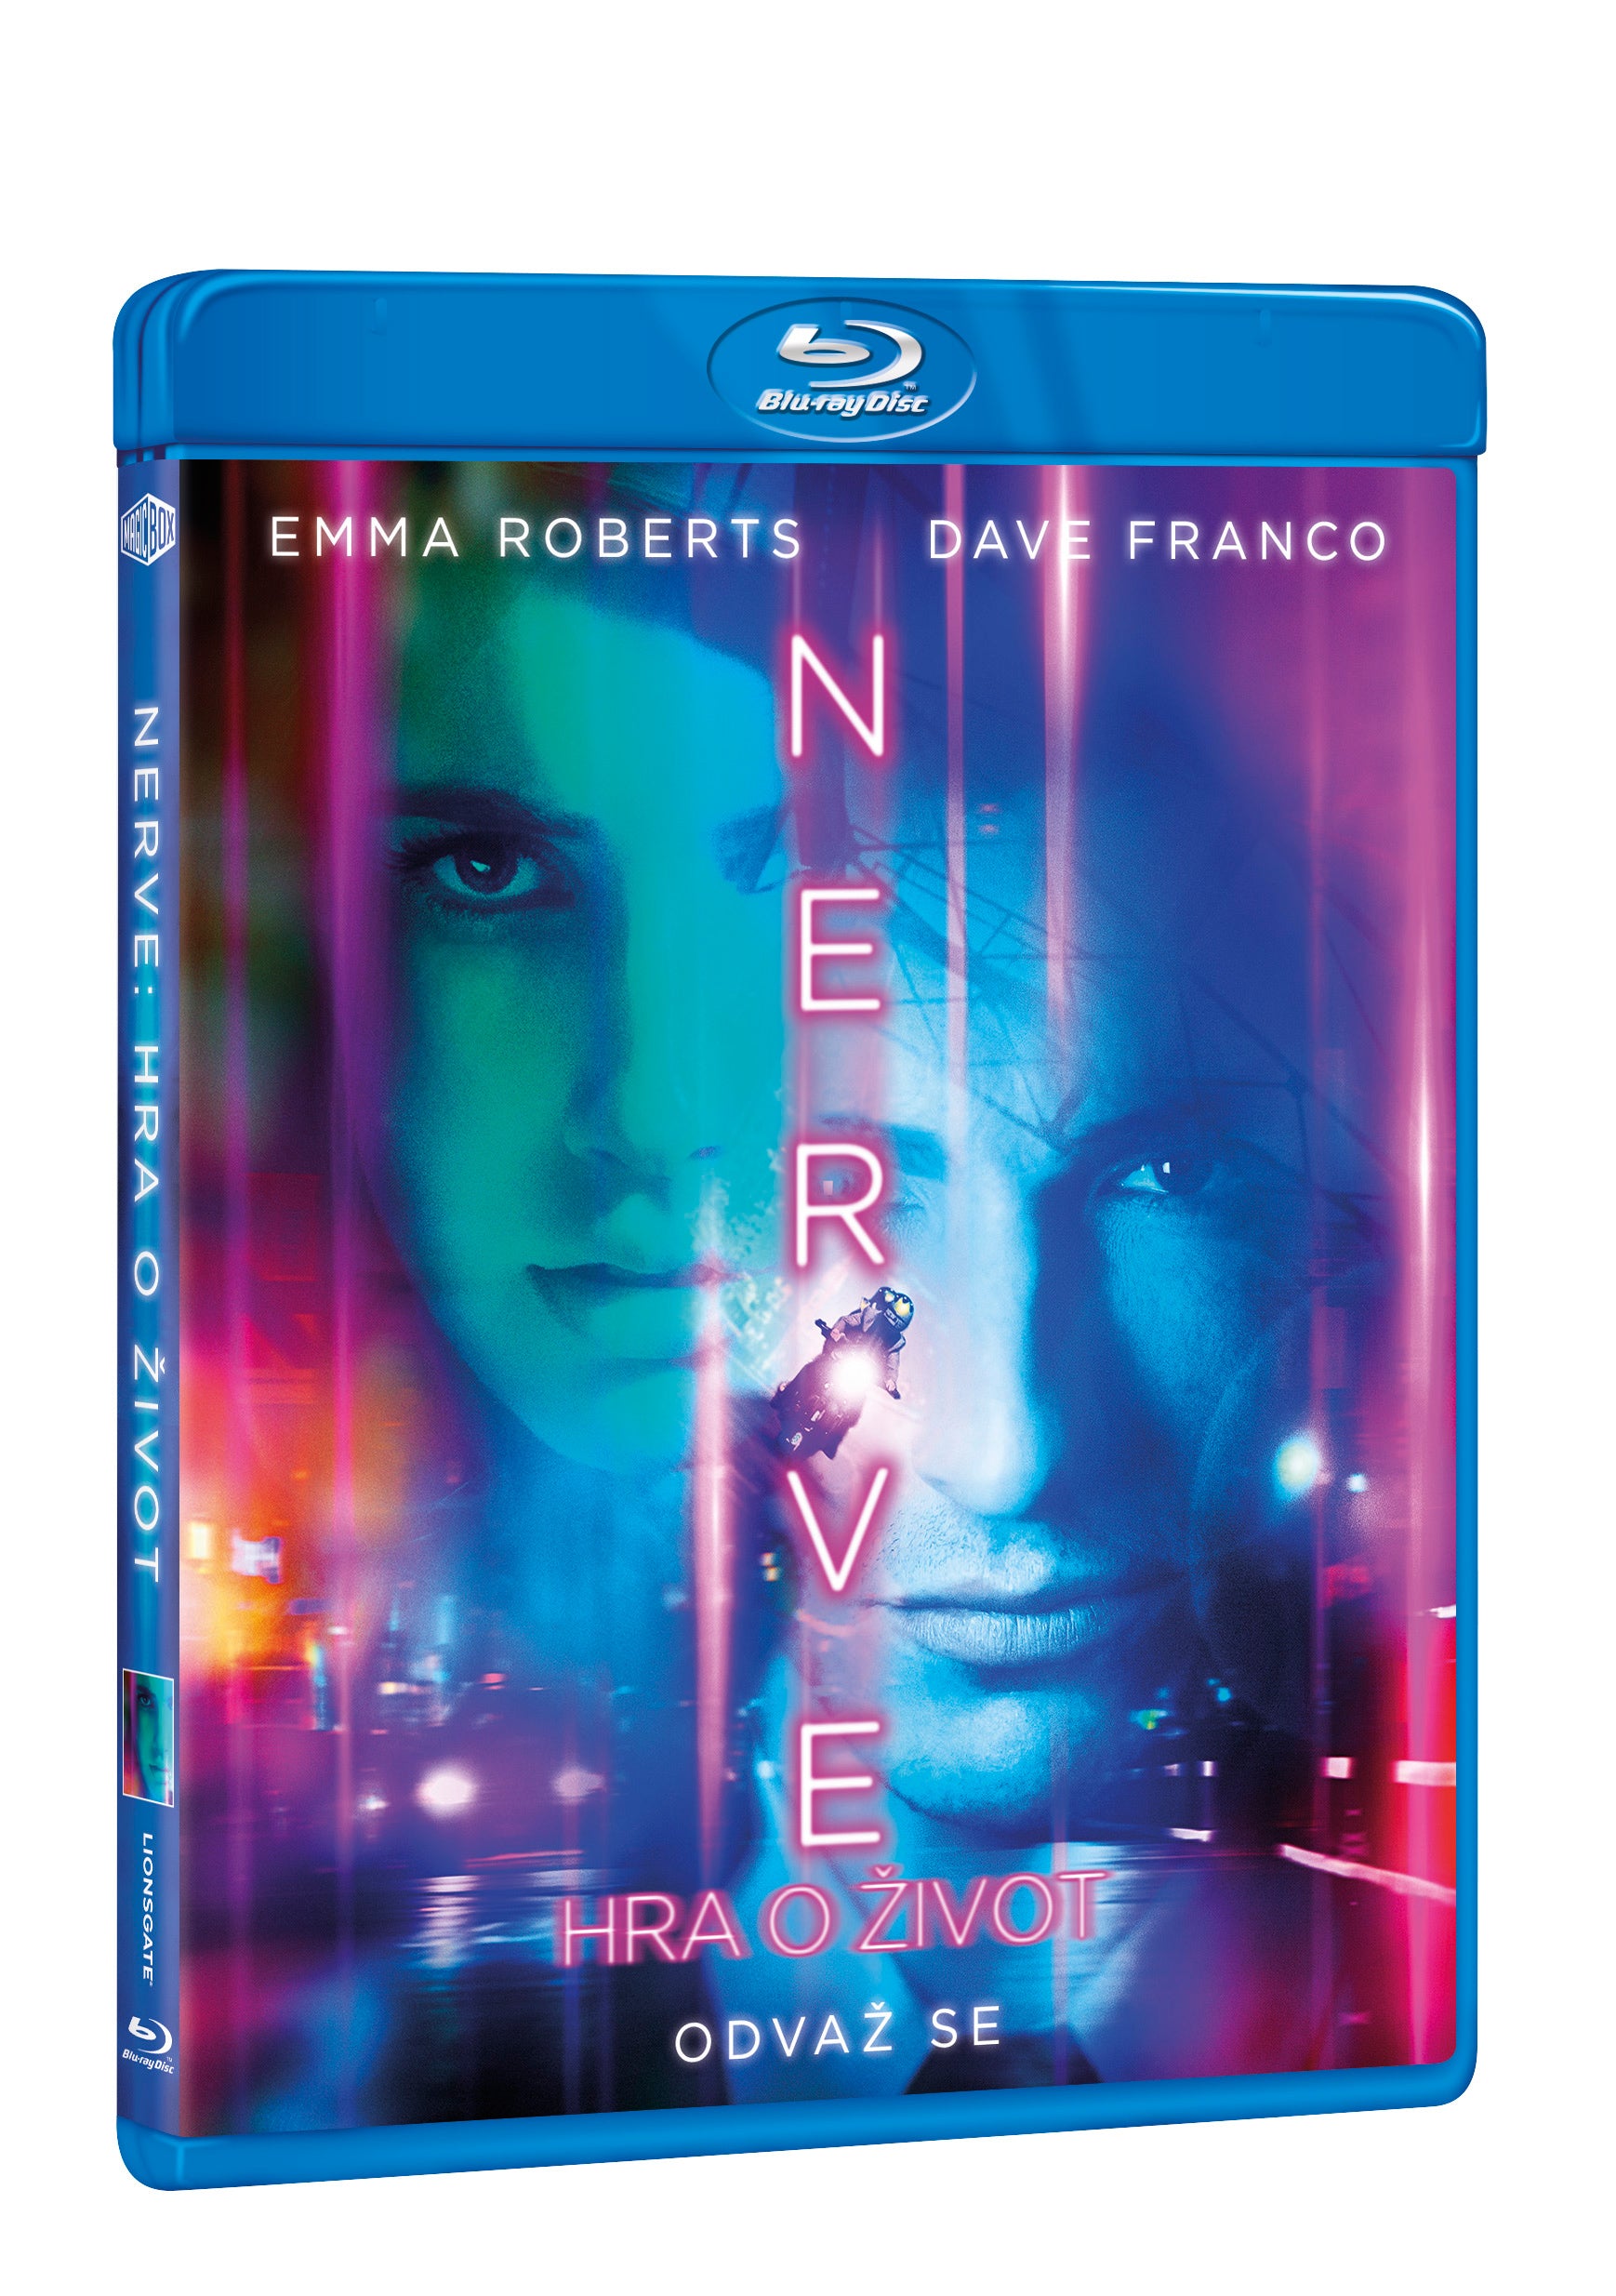 Nerve: Hra o zivot BD / Nerve - Czech version